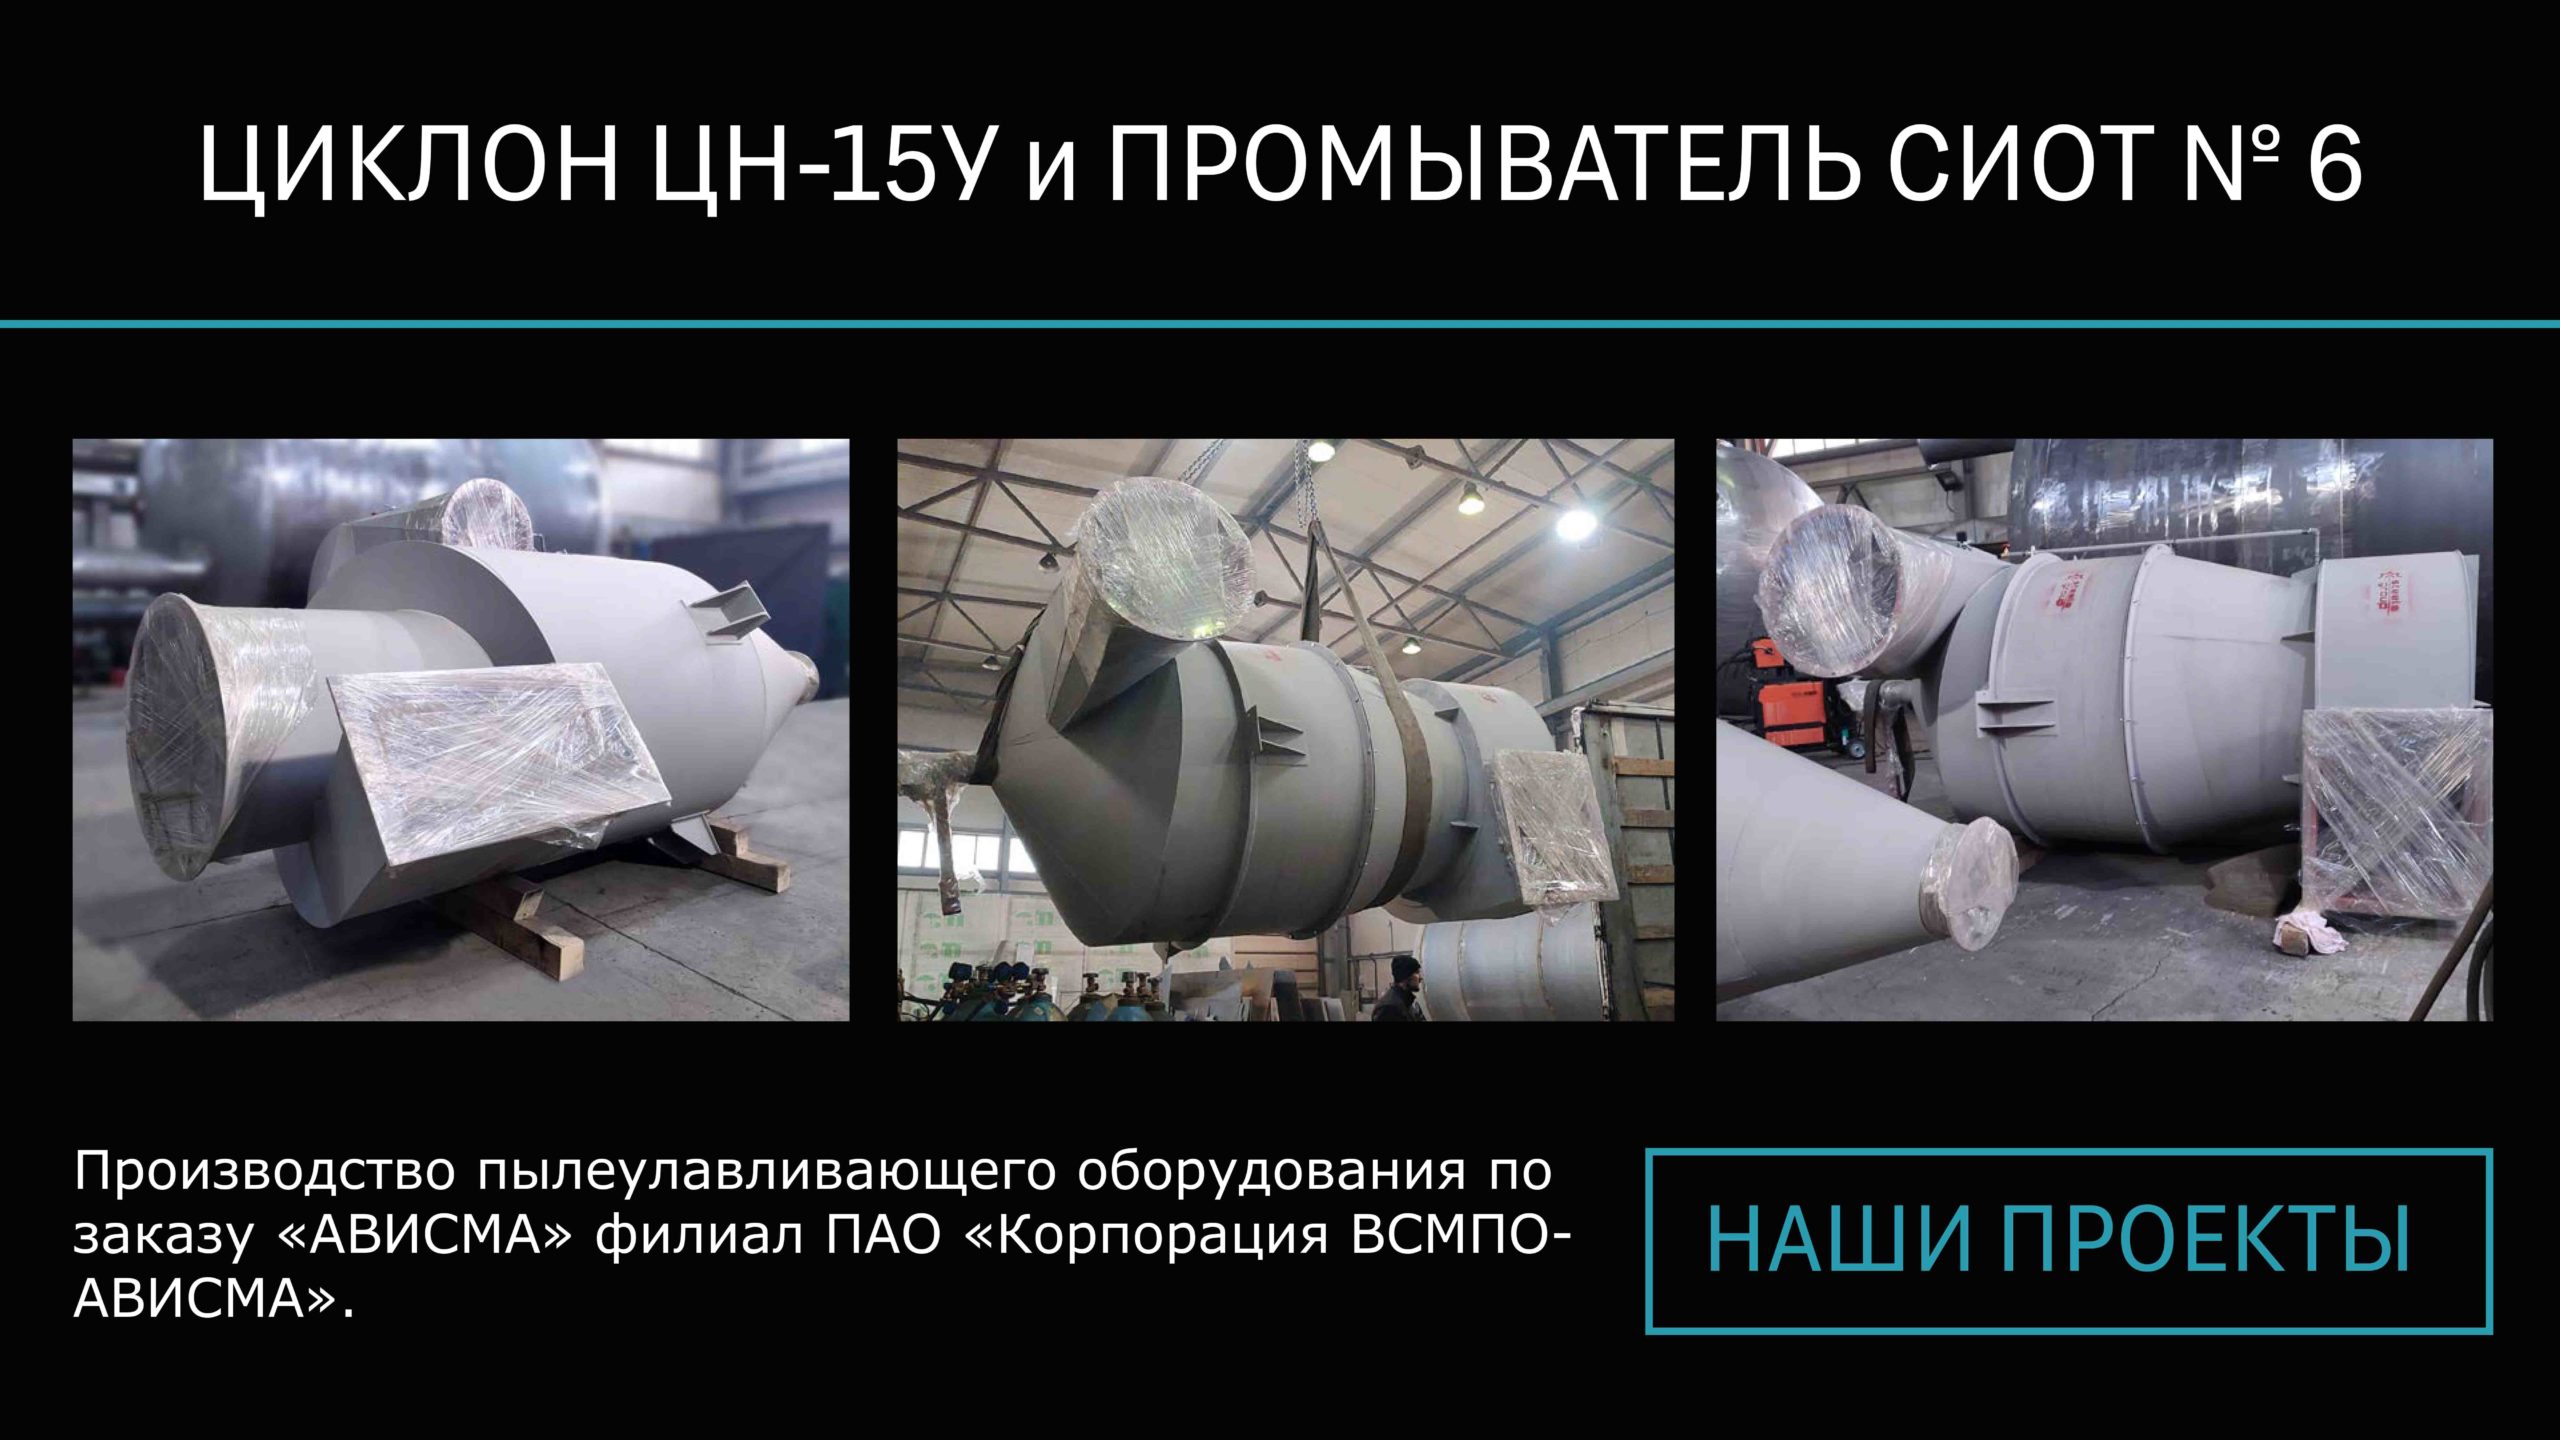 СТИЛСГРУПП - наши проекты - циклон ЦН-15У и промыватель СИОТ №6